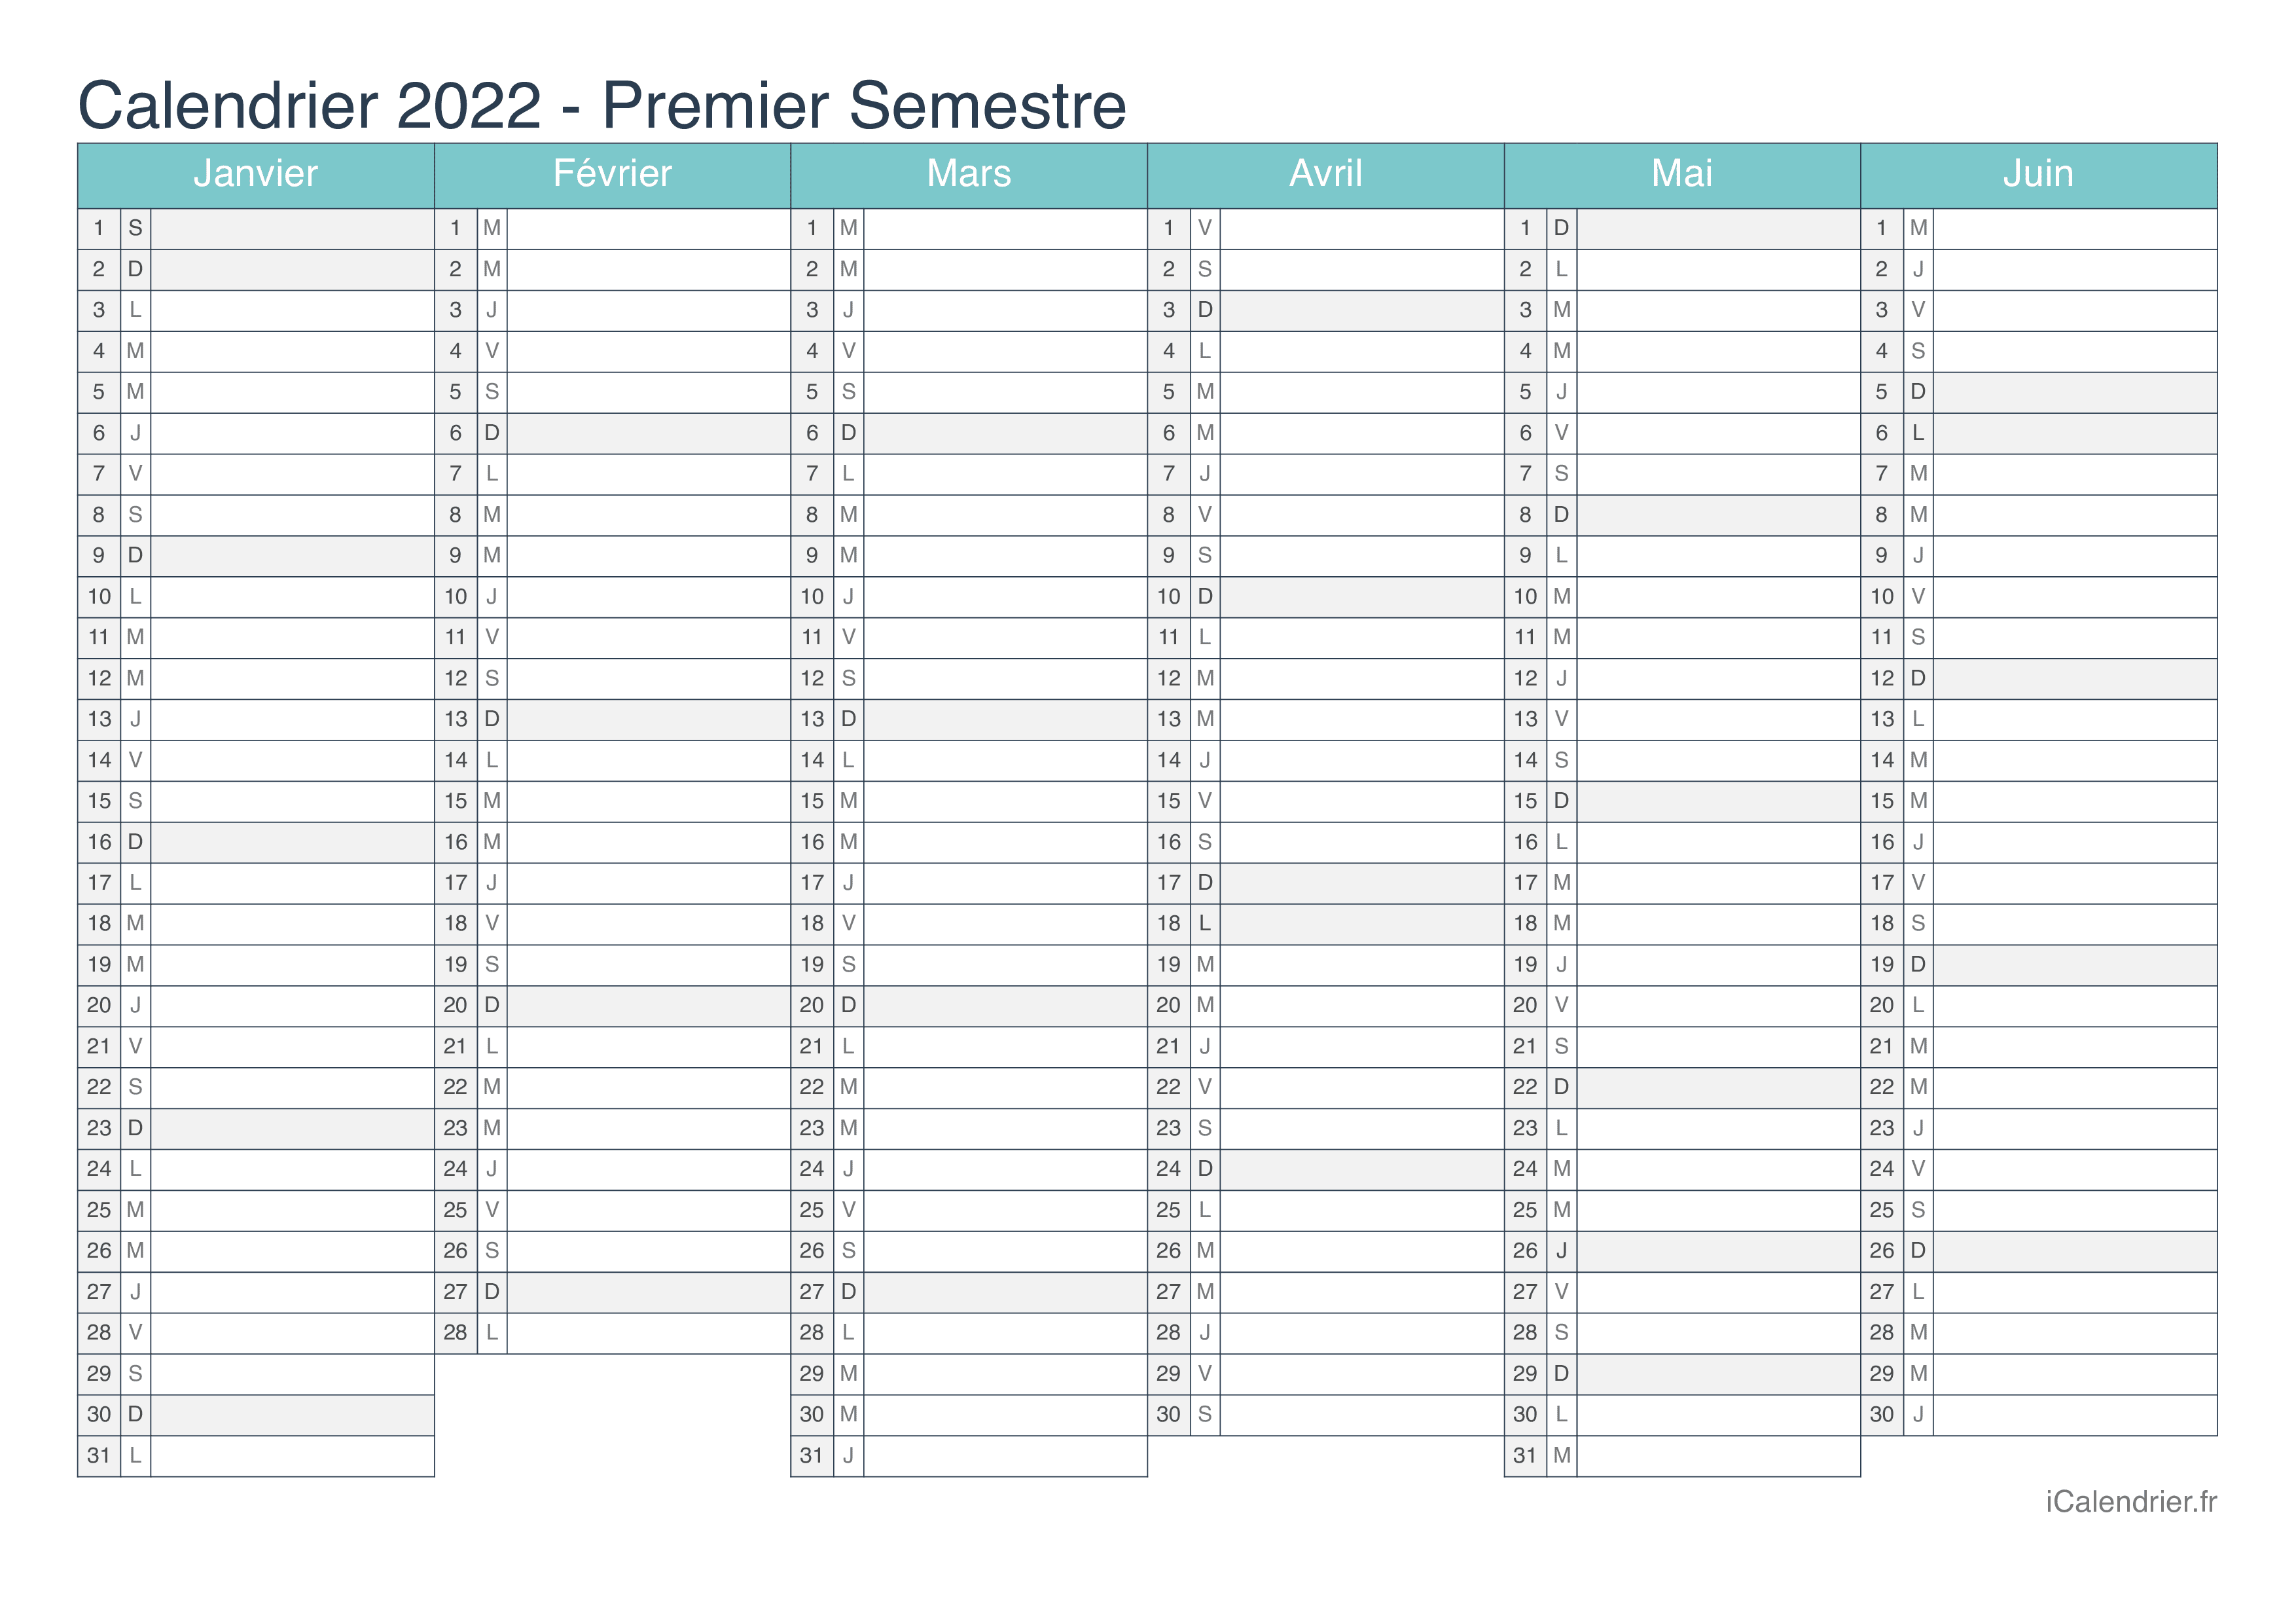 Calendrier par semestre 2022 - Turquoise